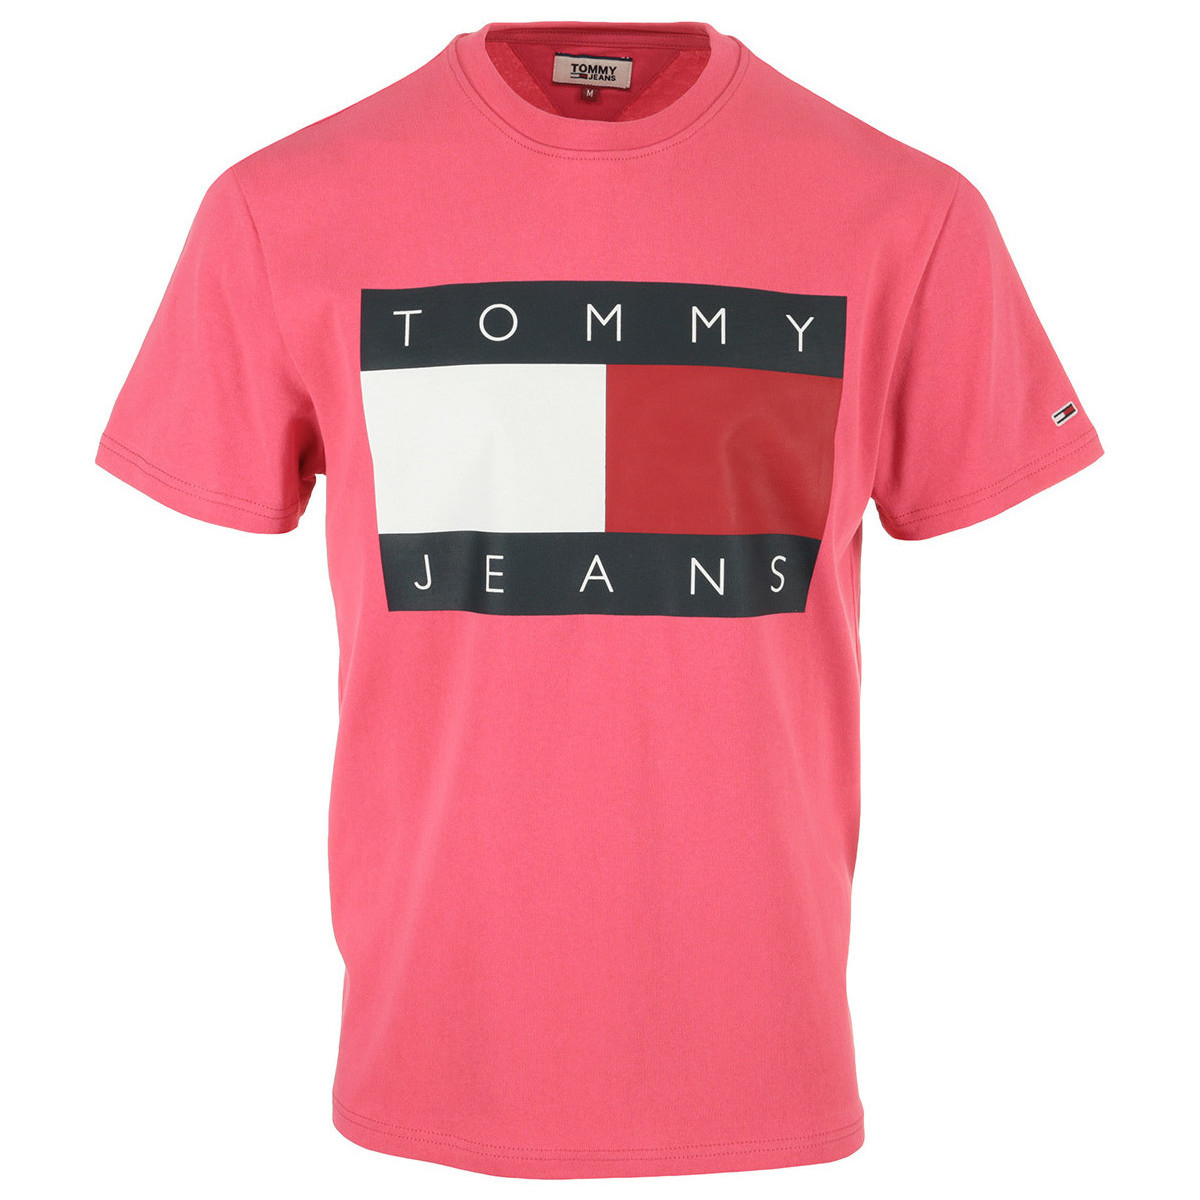 tekstylia Męskie T-shirty z krótkim rękawem Tommy Hilfiger Tommy Flag Tee Różowy